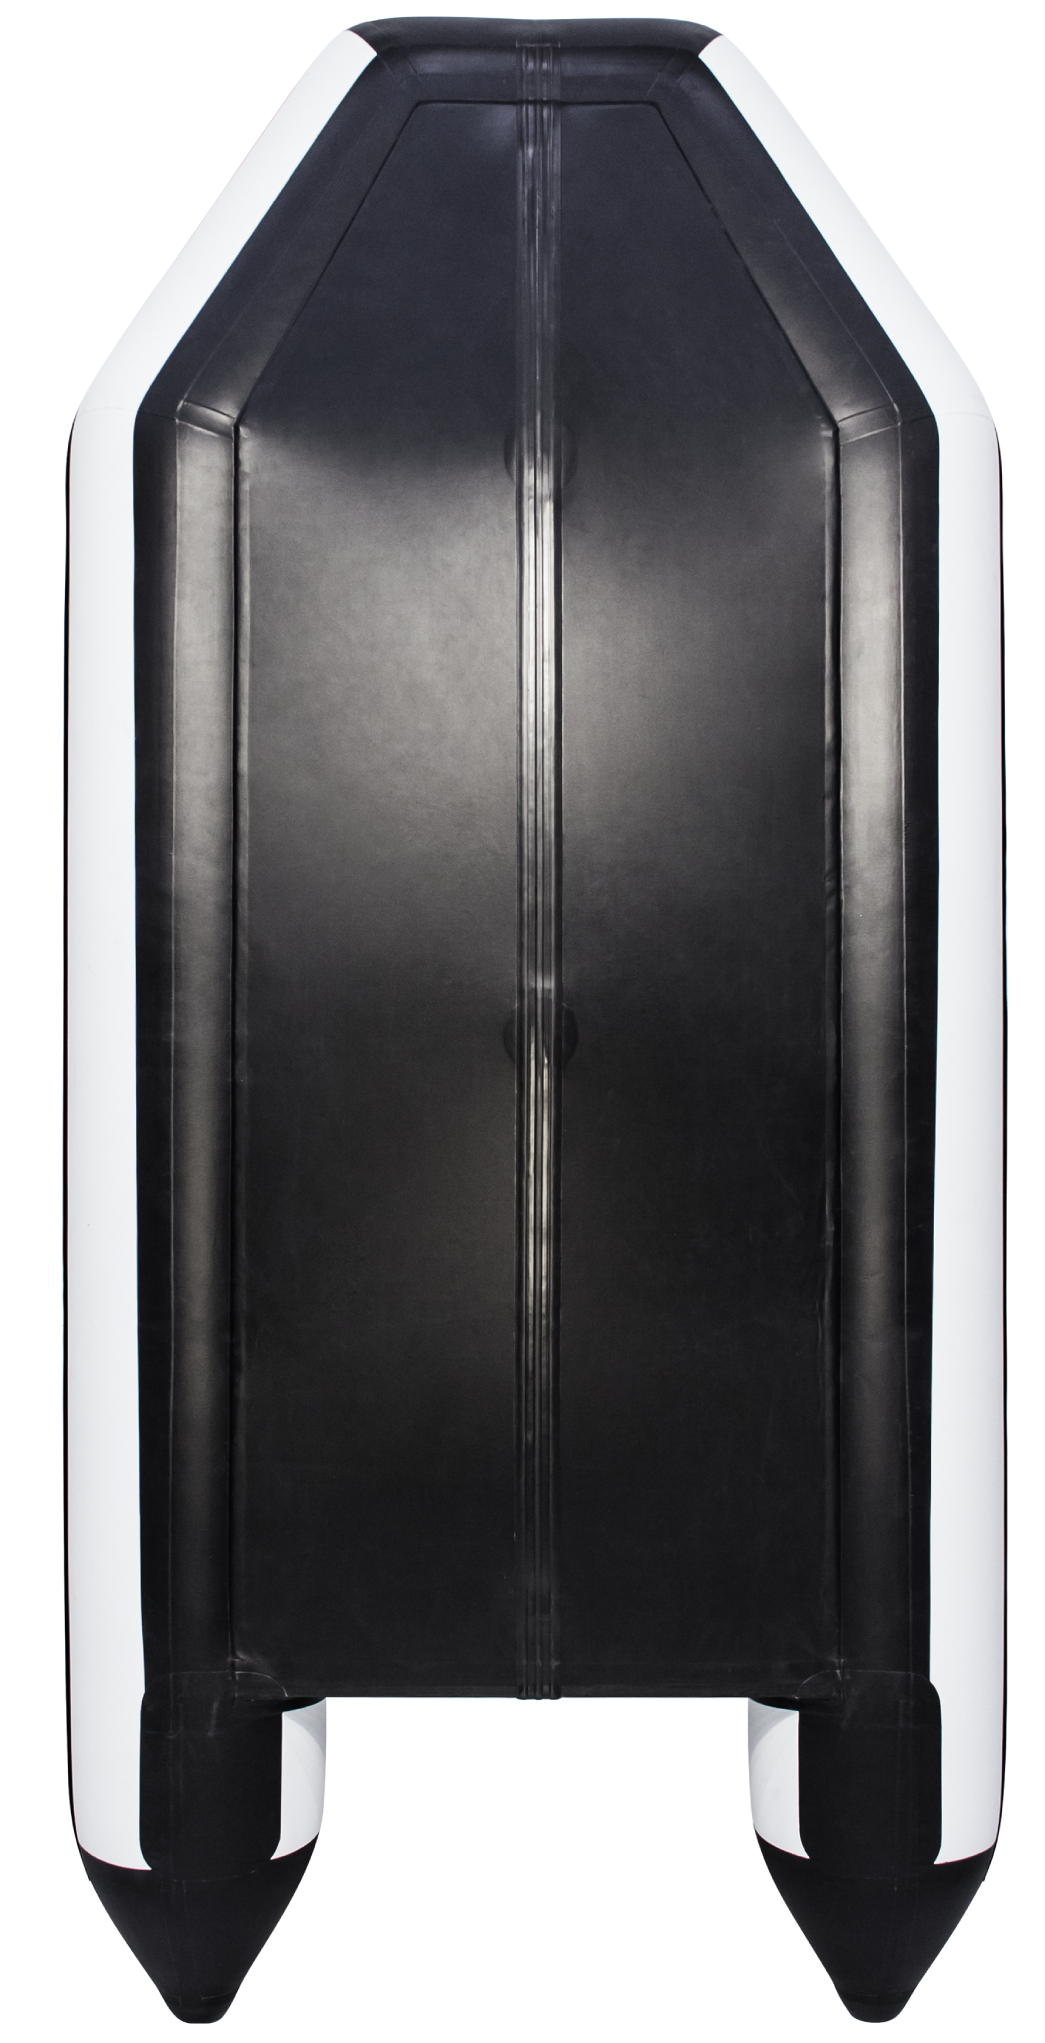 АКВА 2800 Слань-книжка киль Светло-серый/черный фото 2